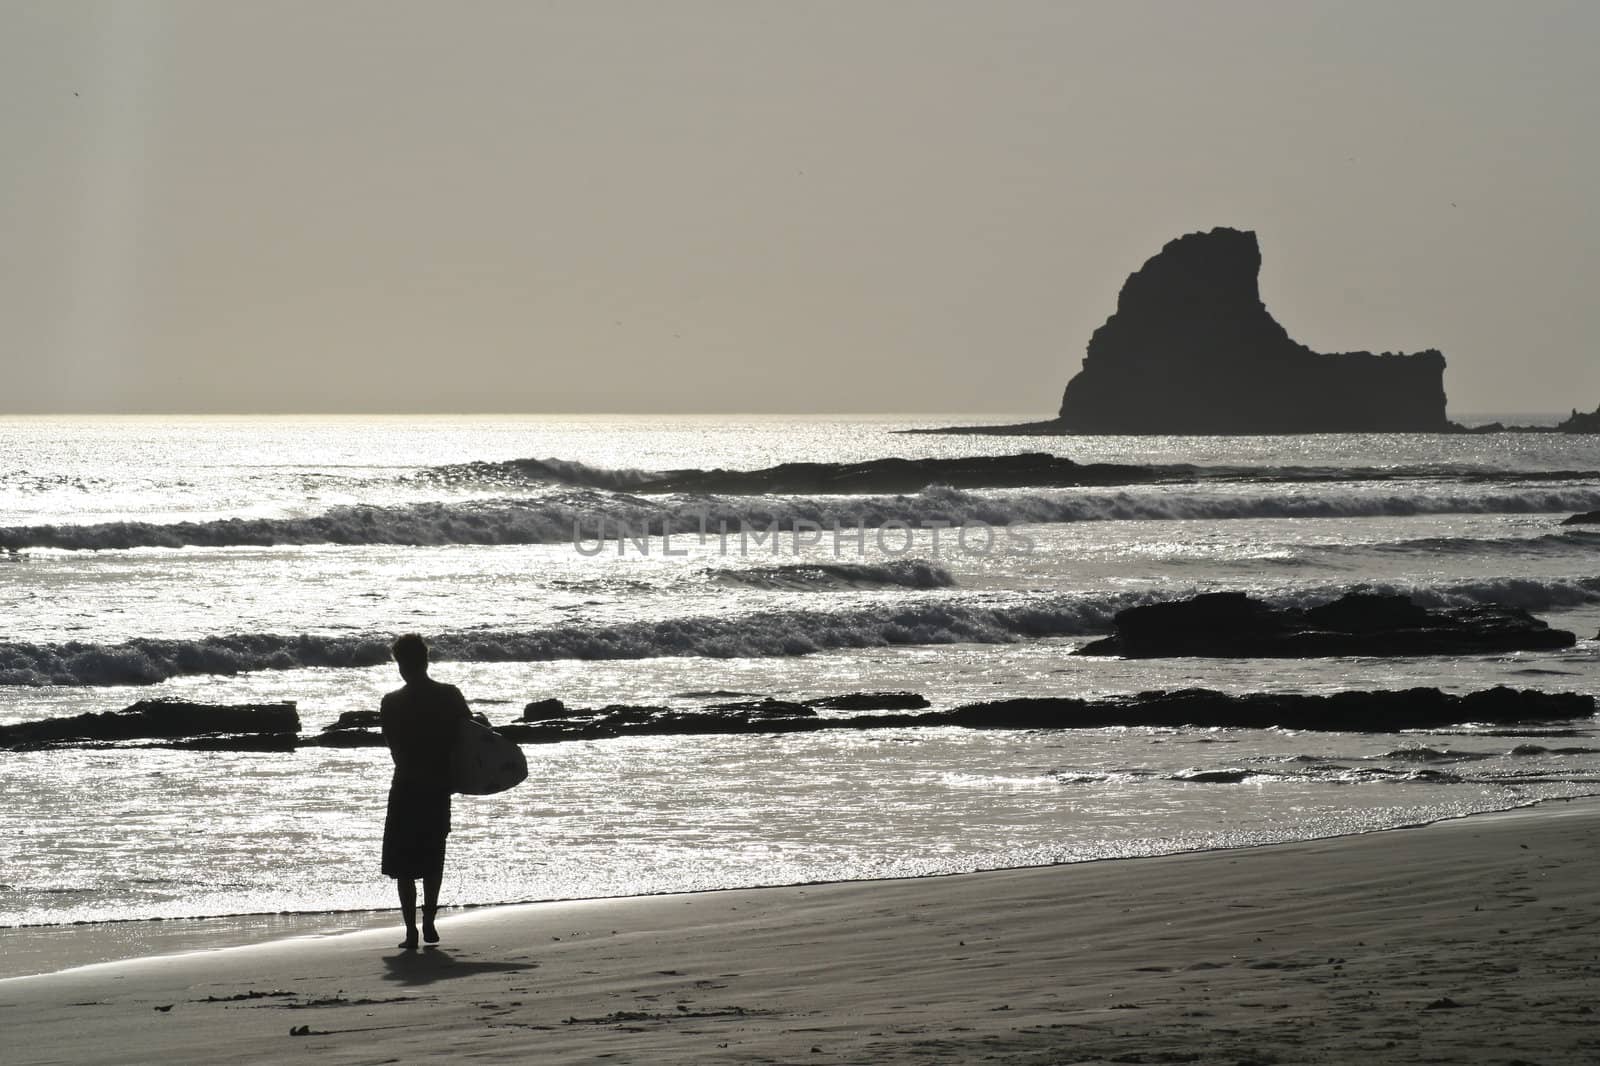 A surfer carries his board at a beach near San Juan del Sur.